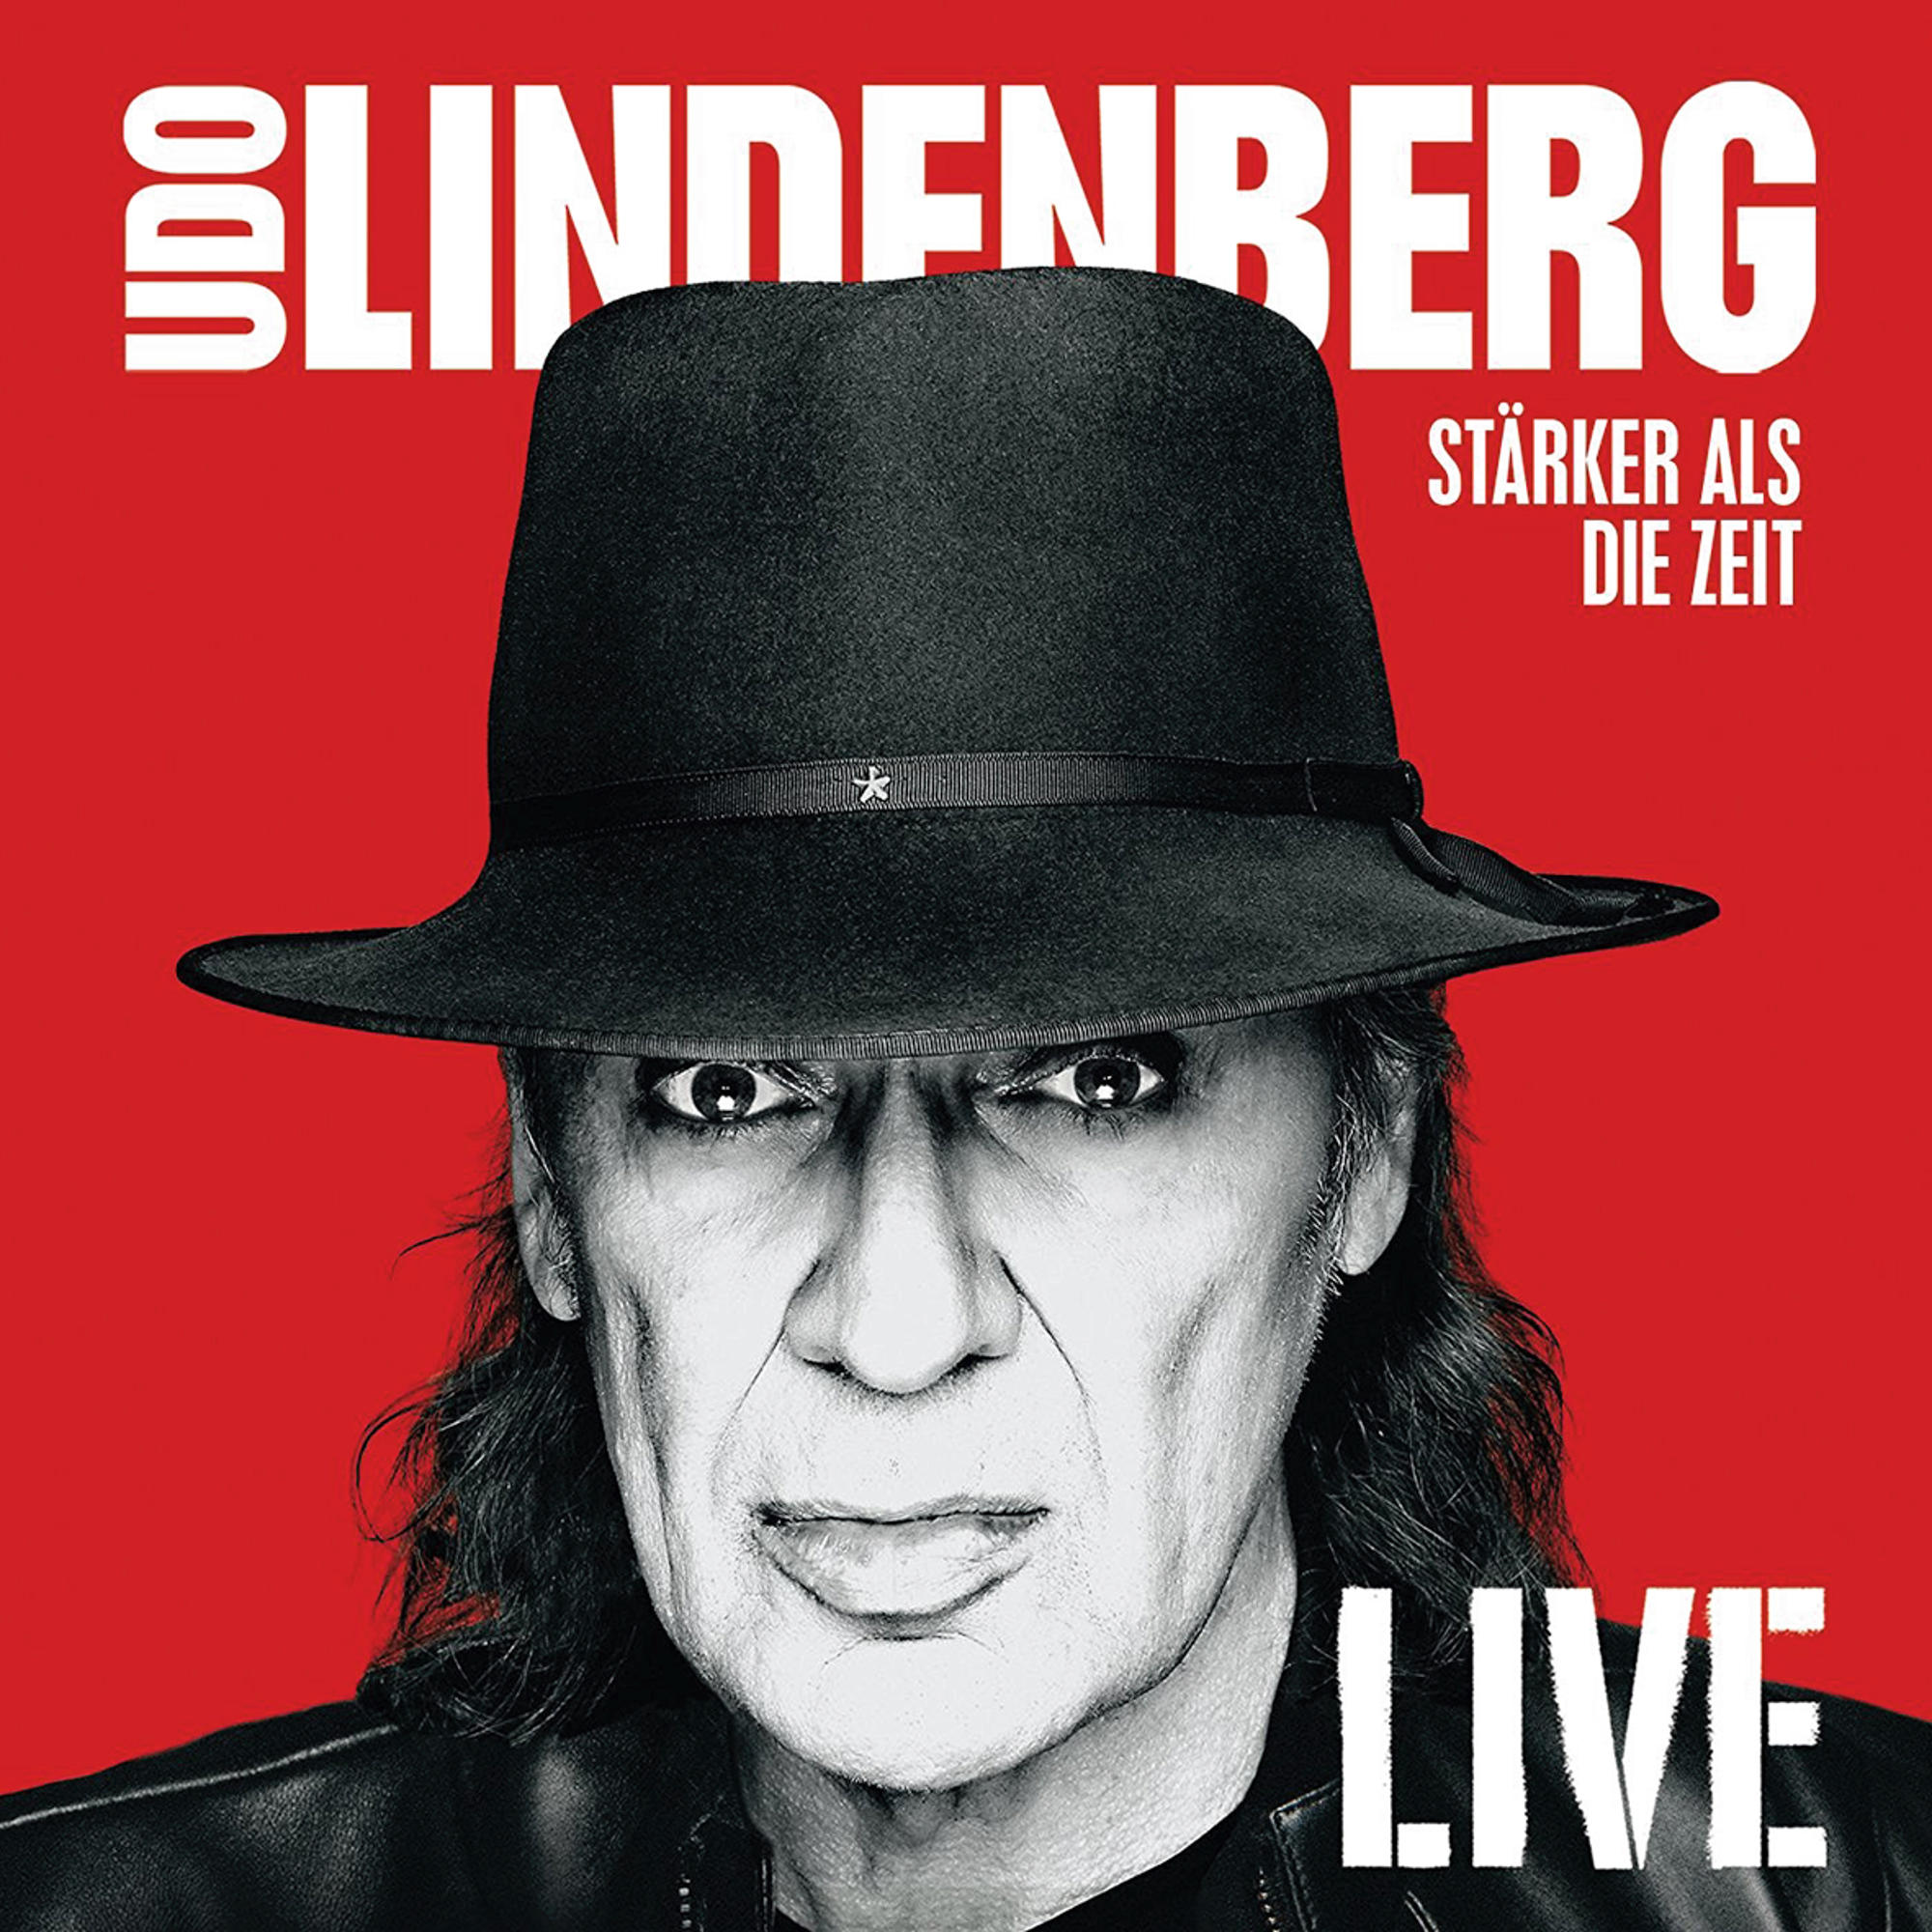 Lindenberg (CD) Als Zeit Udo - - Die Stärker